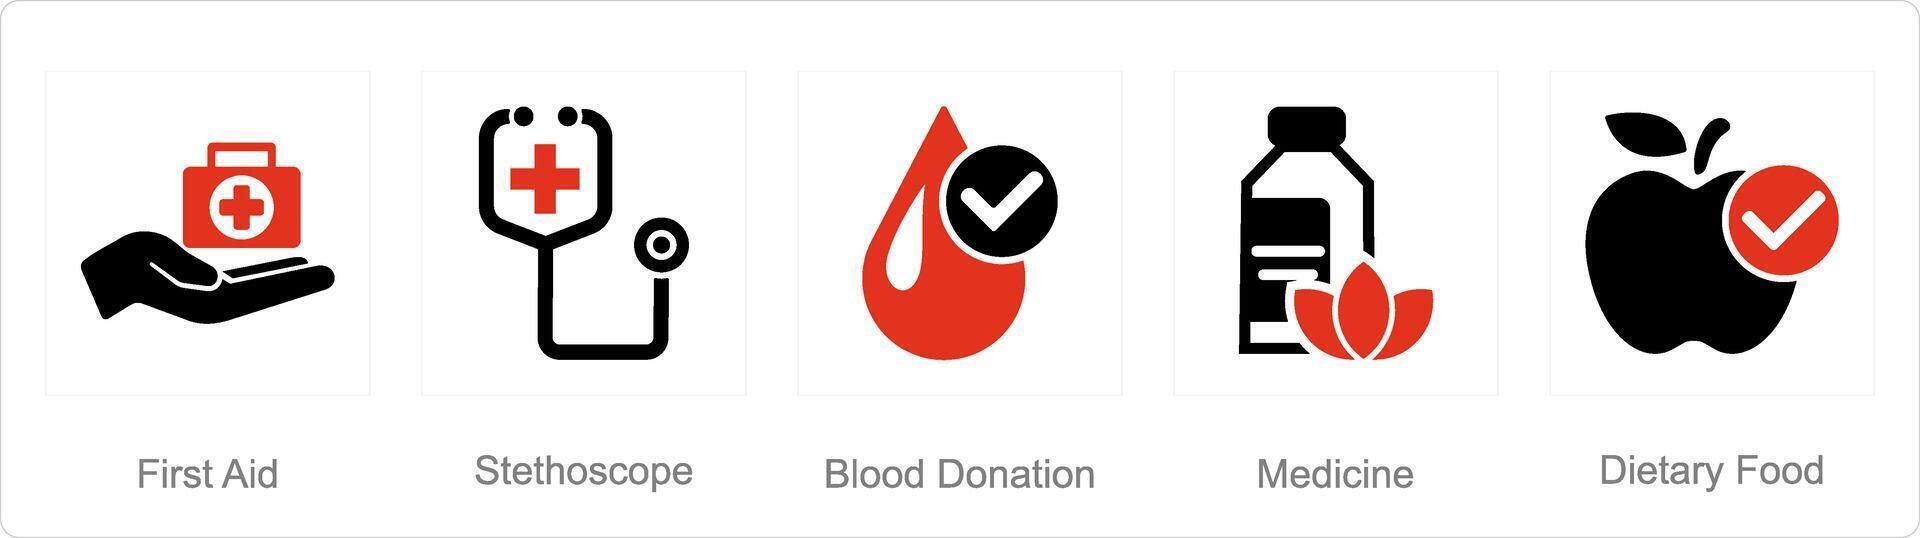 uma conjunto do 5 misturar ícones Como primeiro ajuda, estetoscópio, sangue doação vetor